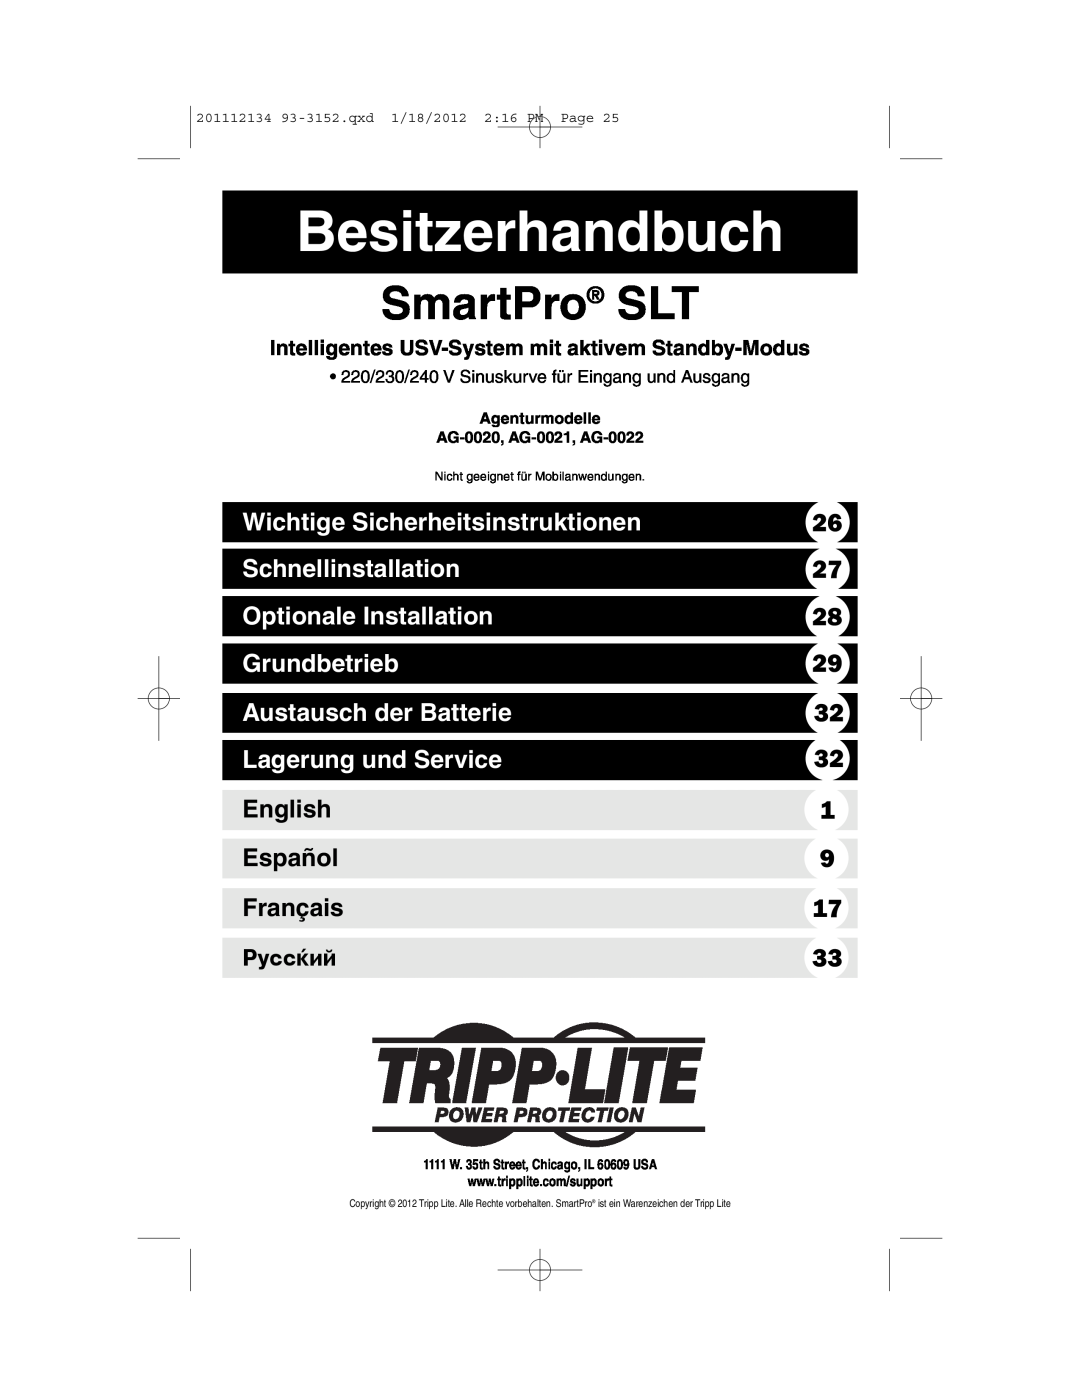 Tripp Lite AG-0021 Besitzerhandbuch, Wichtige Sicherheitsinstruktionen, Schnellinstallation, Optionale Installation 